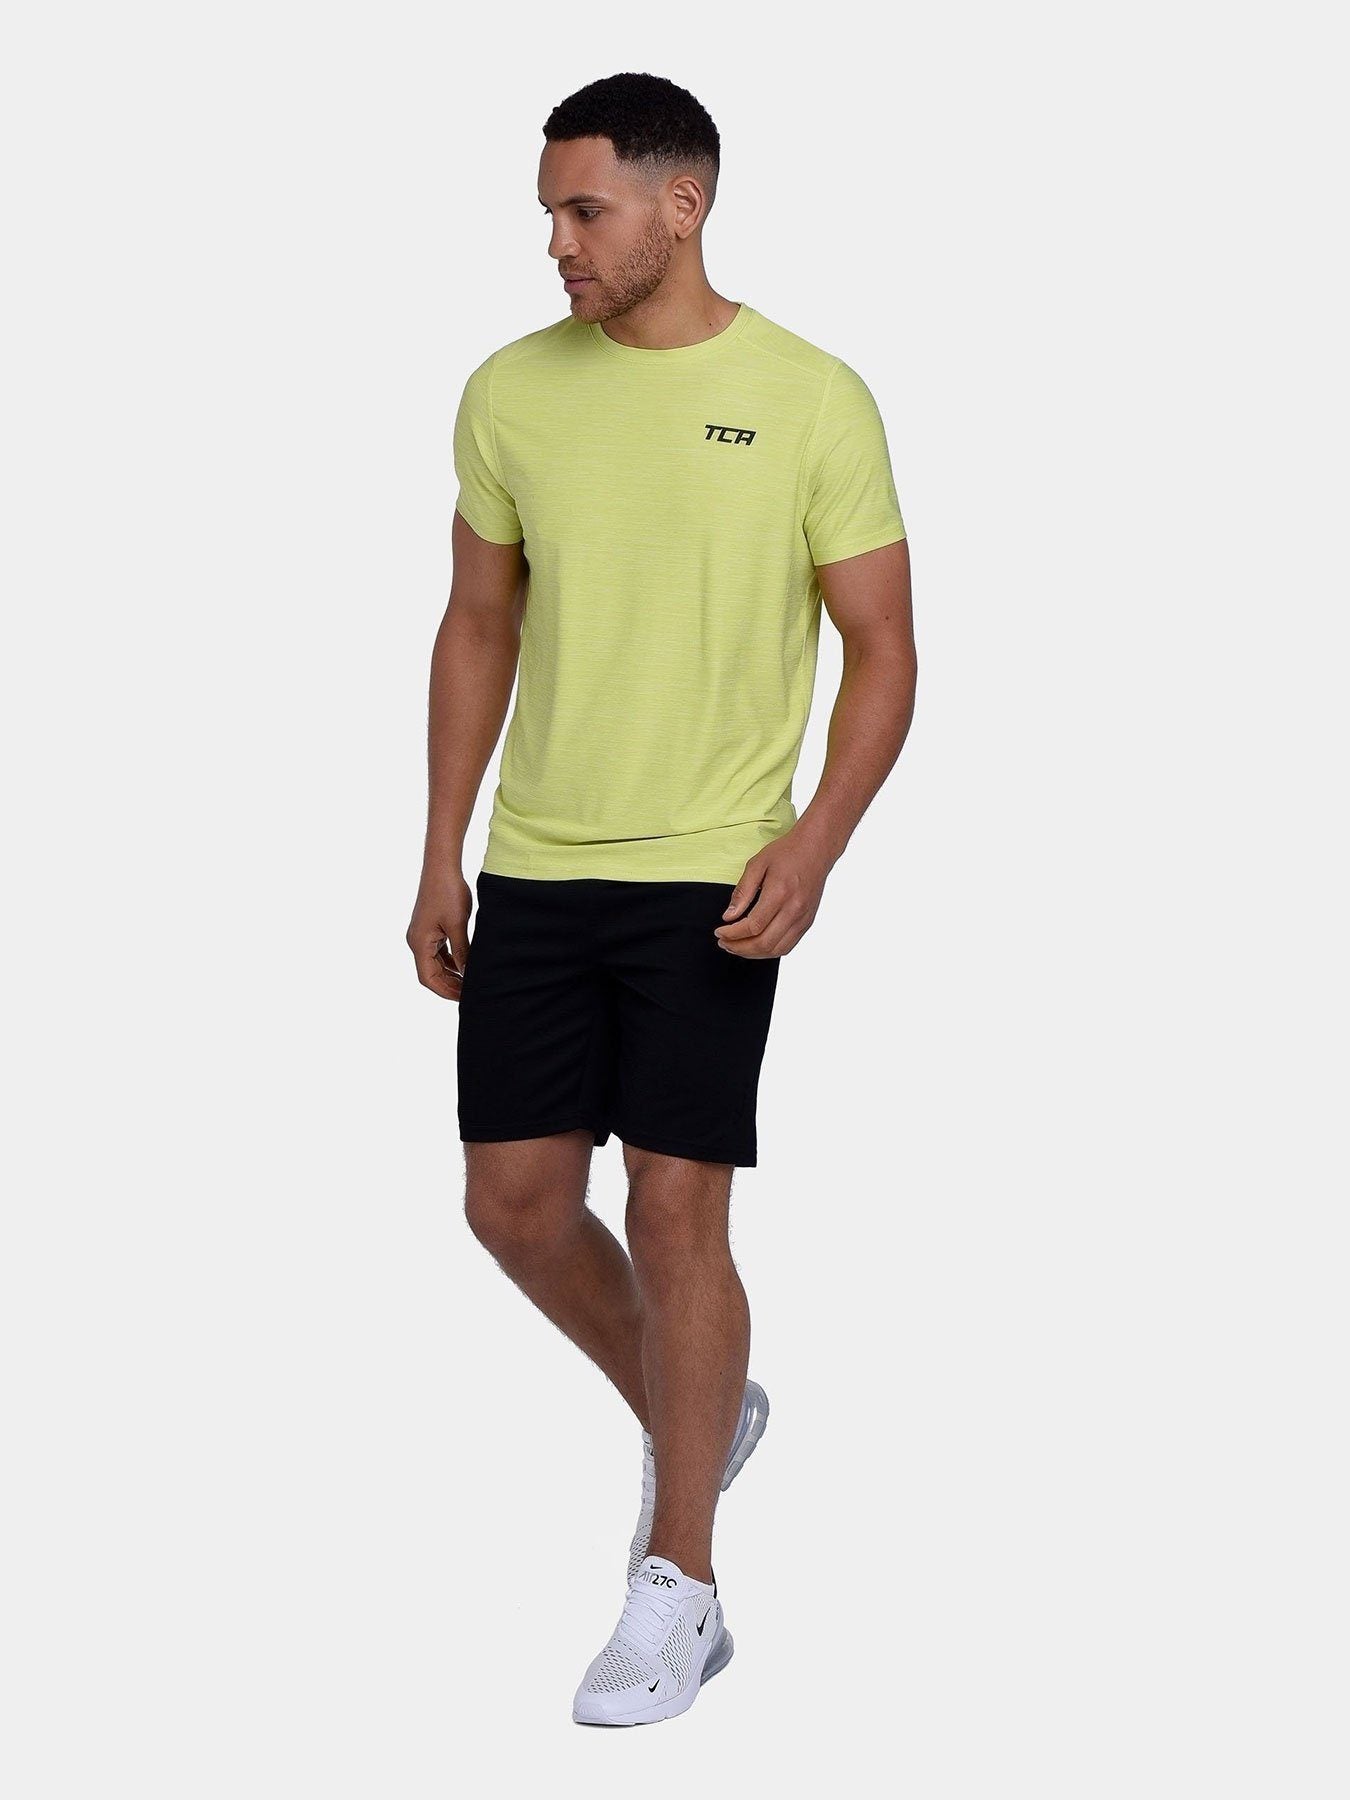 Galaxy 2.0 Short Sleeve T-Shirt For Men